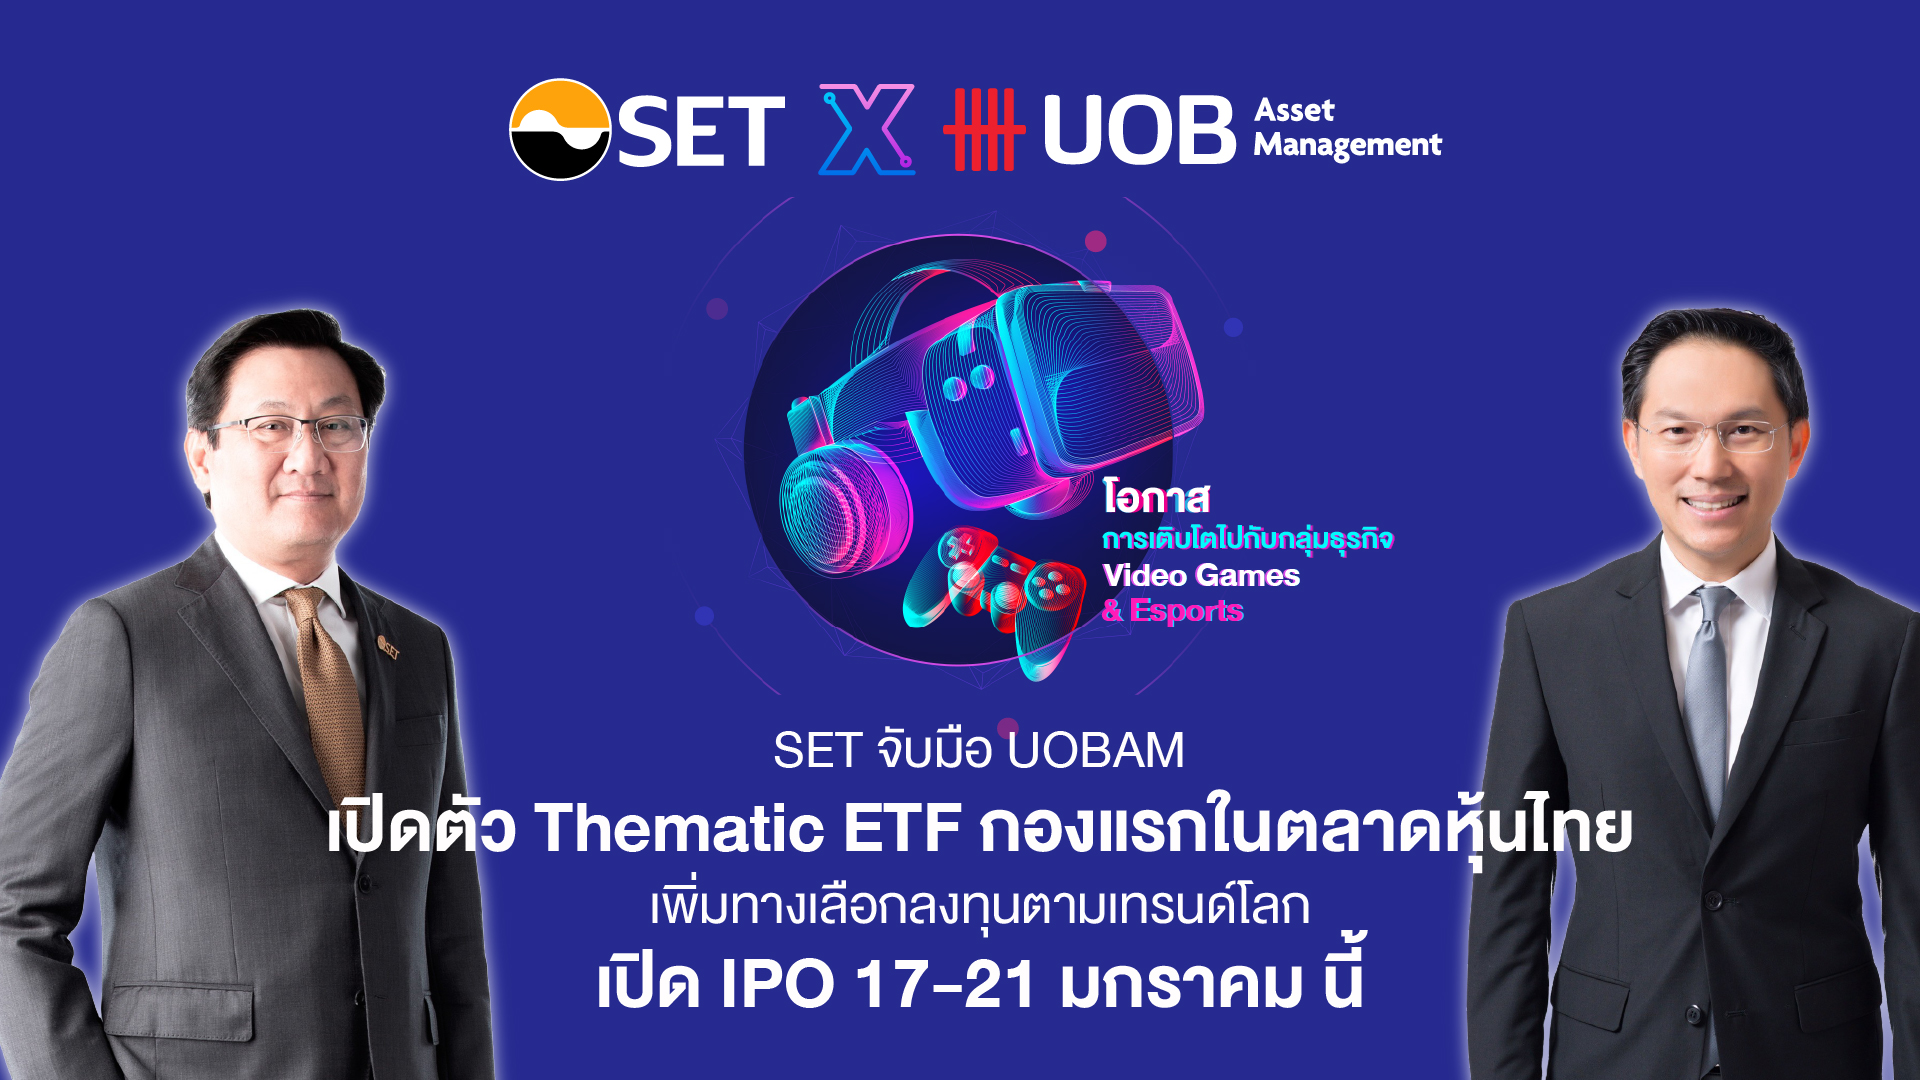 ตลาดหลักทรัพย์ฯ ร่วมกับ บลจ. ยูโอบี (ประเทศไทย) เปิดตัว Thematic ETF กองแรกของไทย